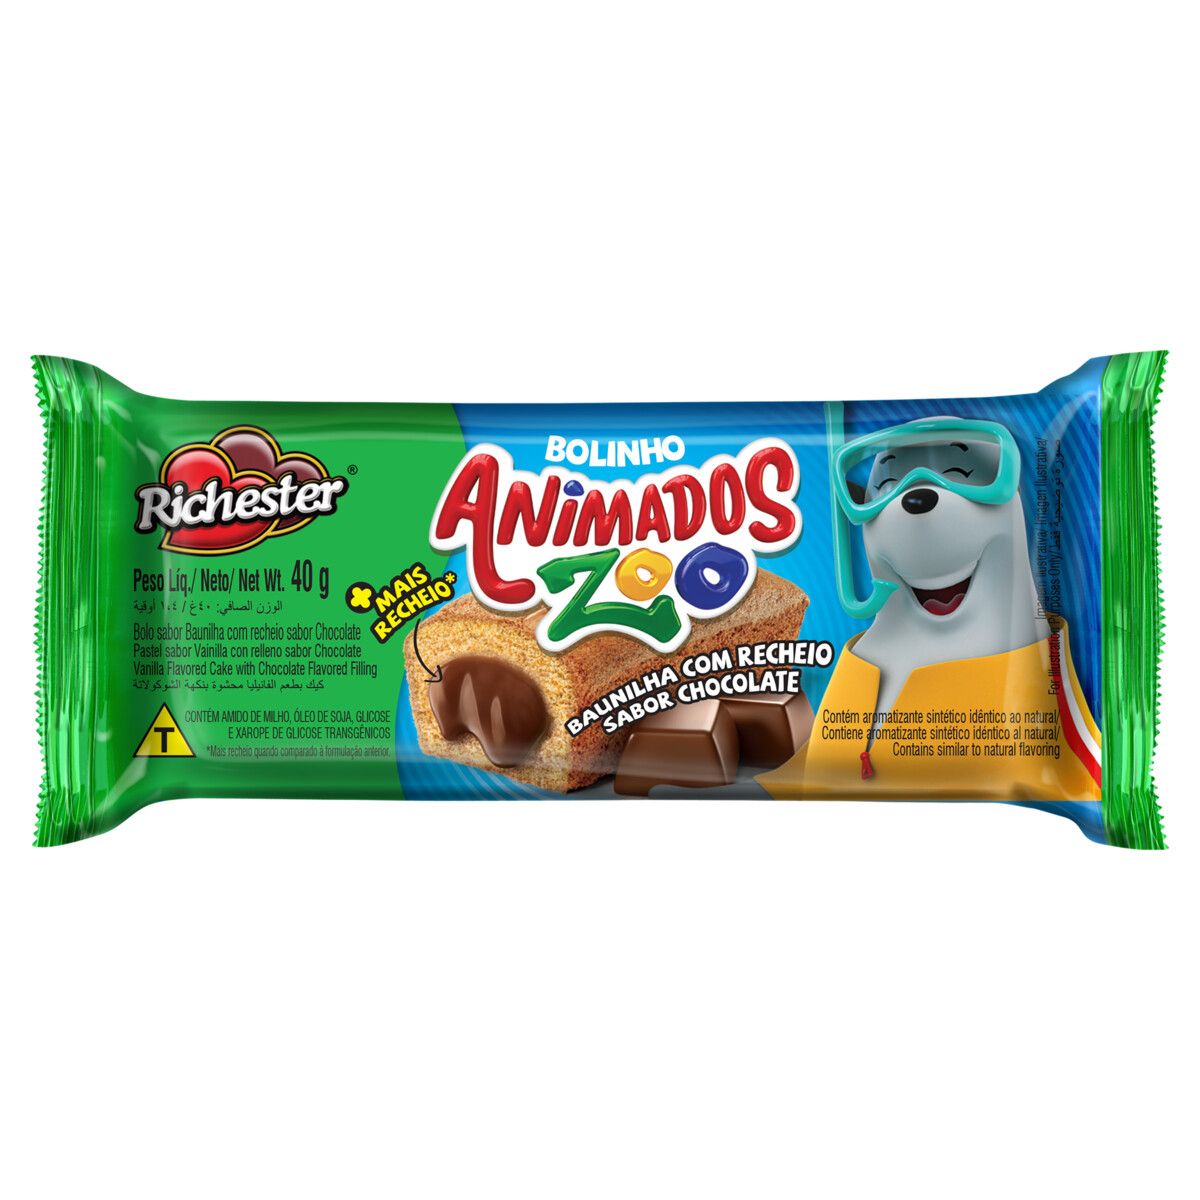 Bolinho Baunilha Recheio Chocolate Richester Animados Zoo Pacote 40g image number 0